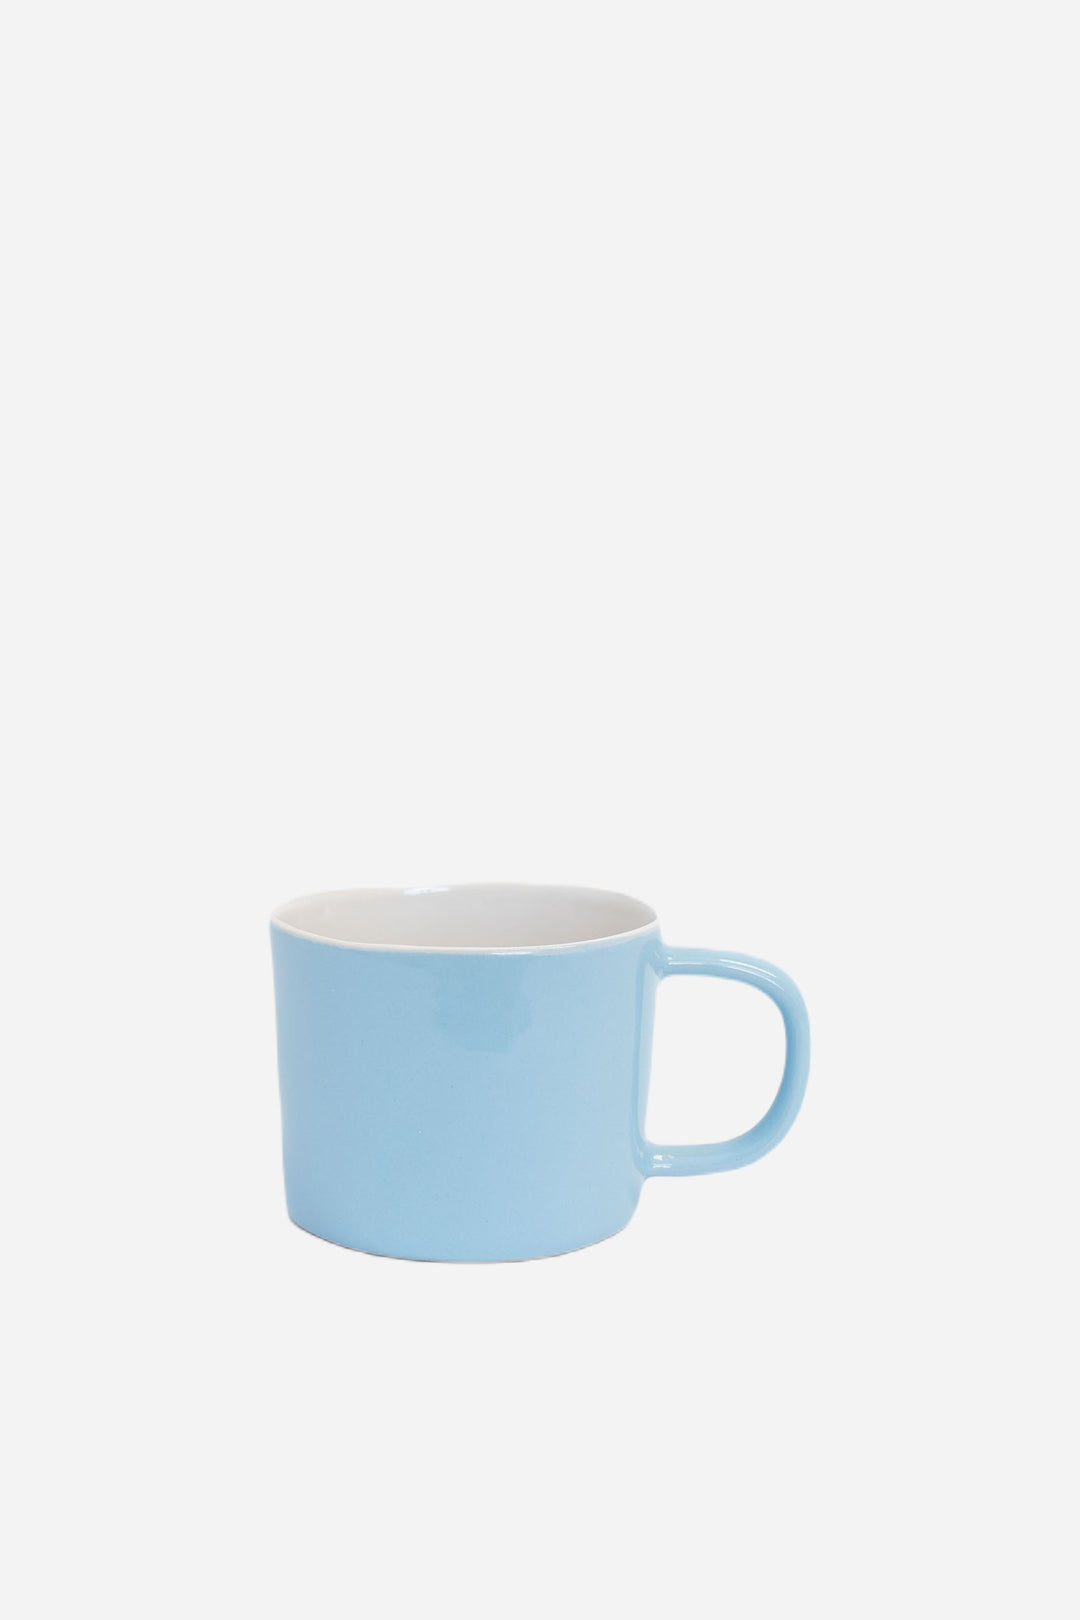 Quail Ceramic Coffee Cup - Sky Blue